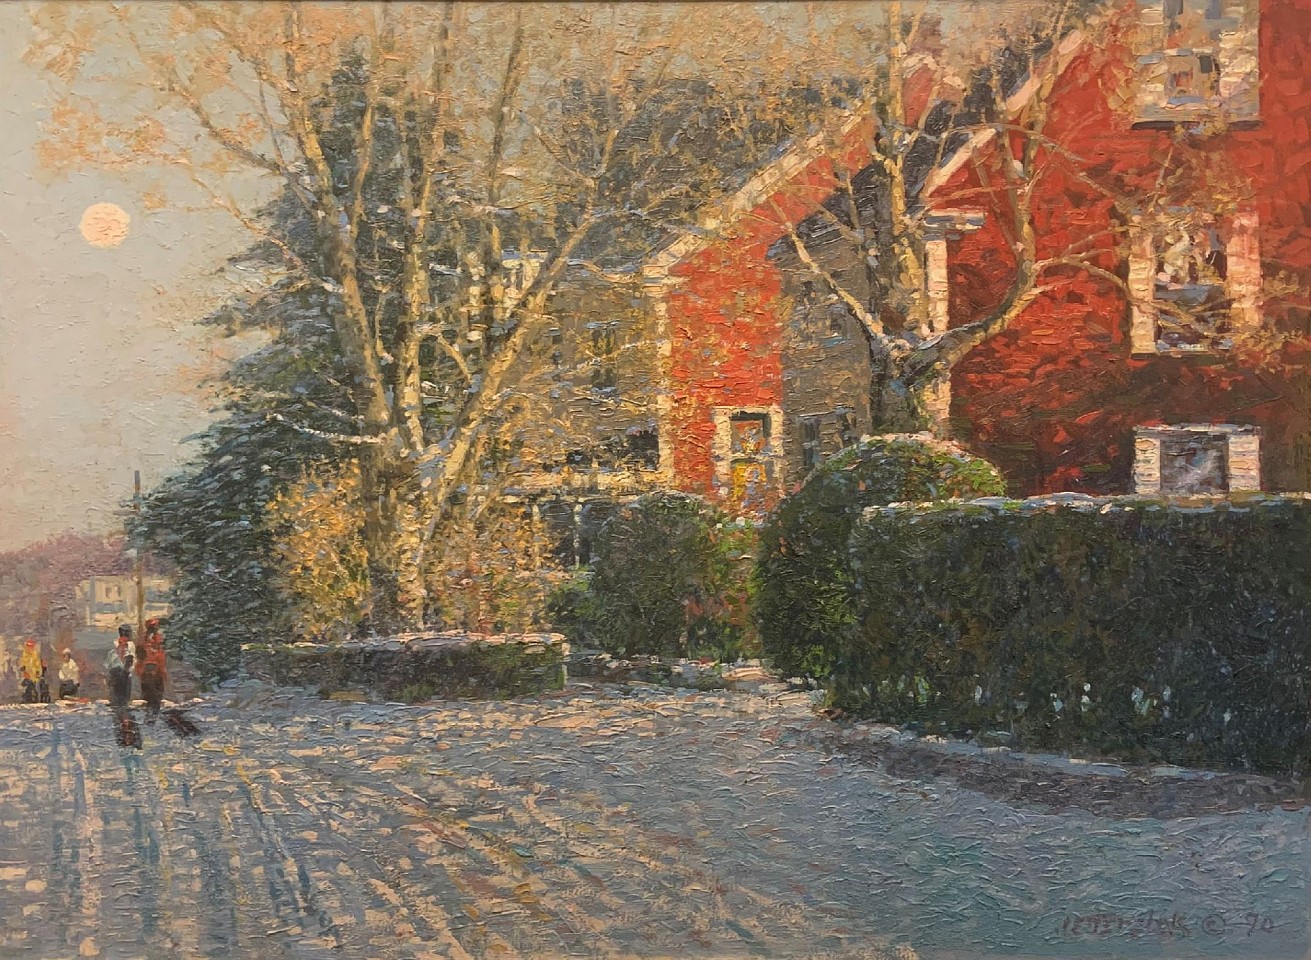 John Terelak, New England Winter, 1990
oil on canvas, 30 x 40 in. (76.2 x 101.6 cm)
JT221106